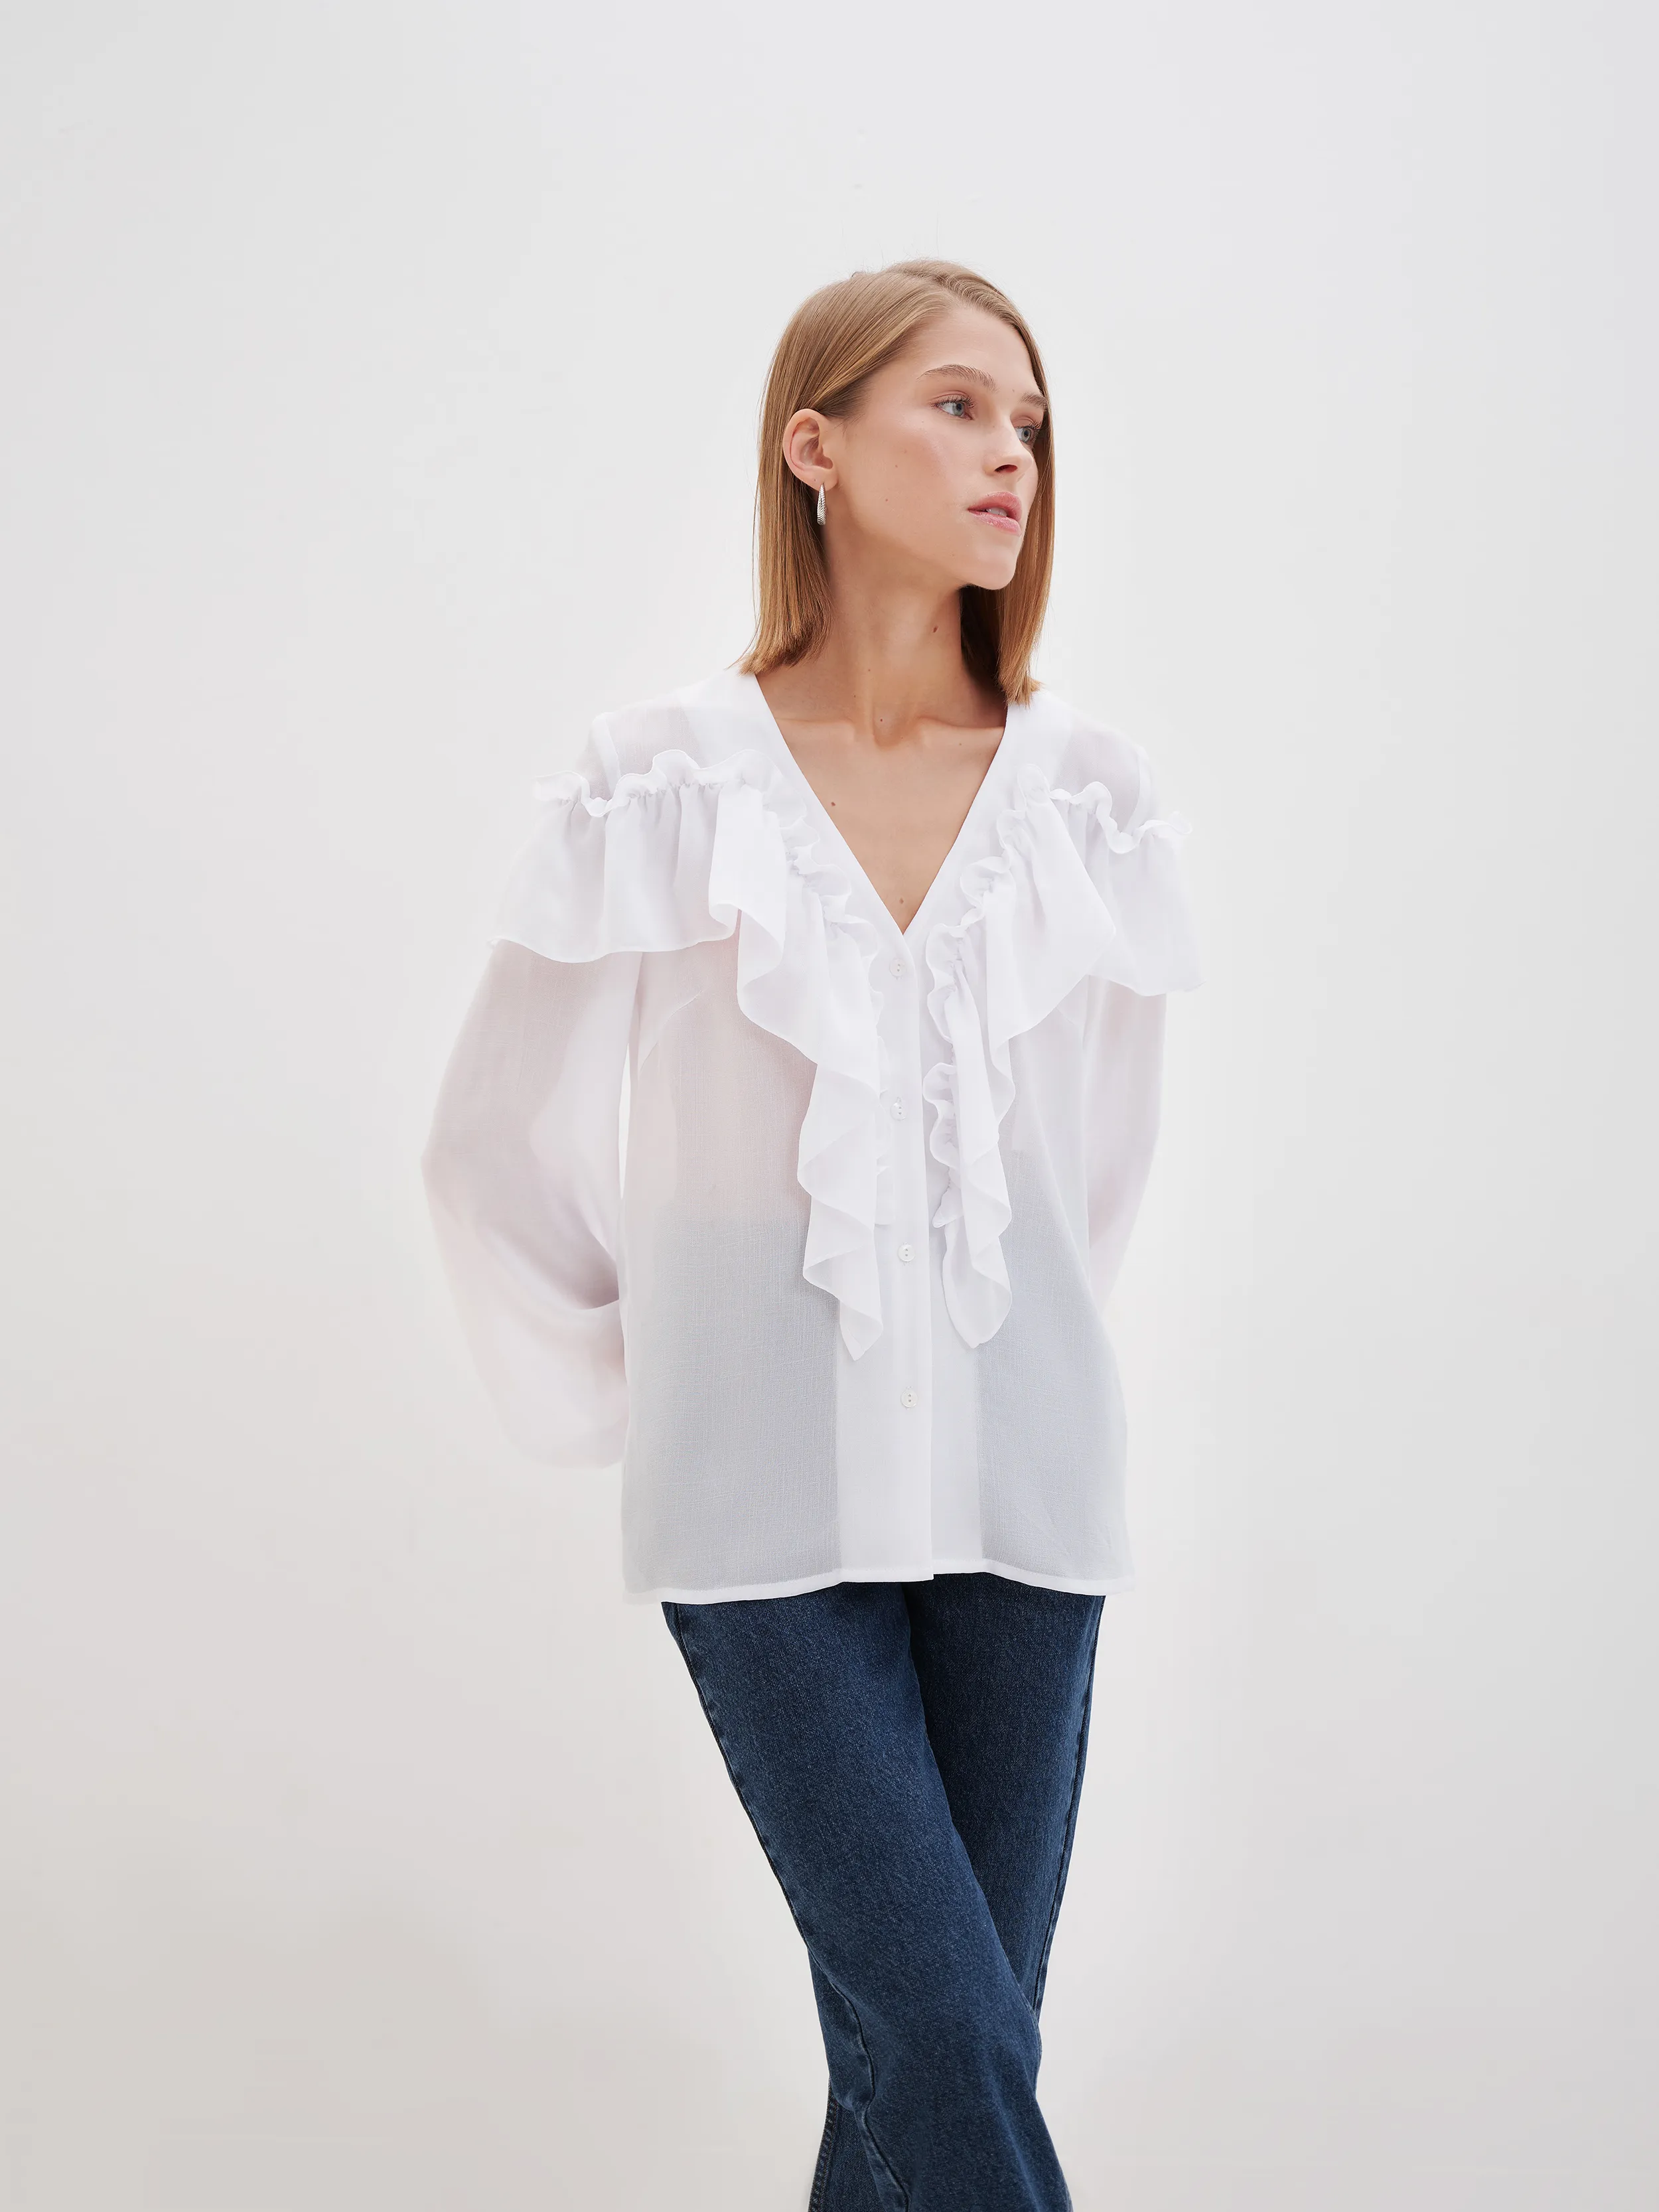 Популярные модели блузок в стиле бохо